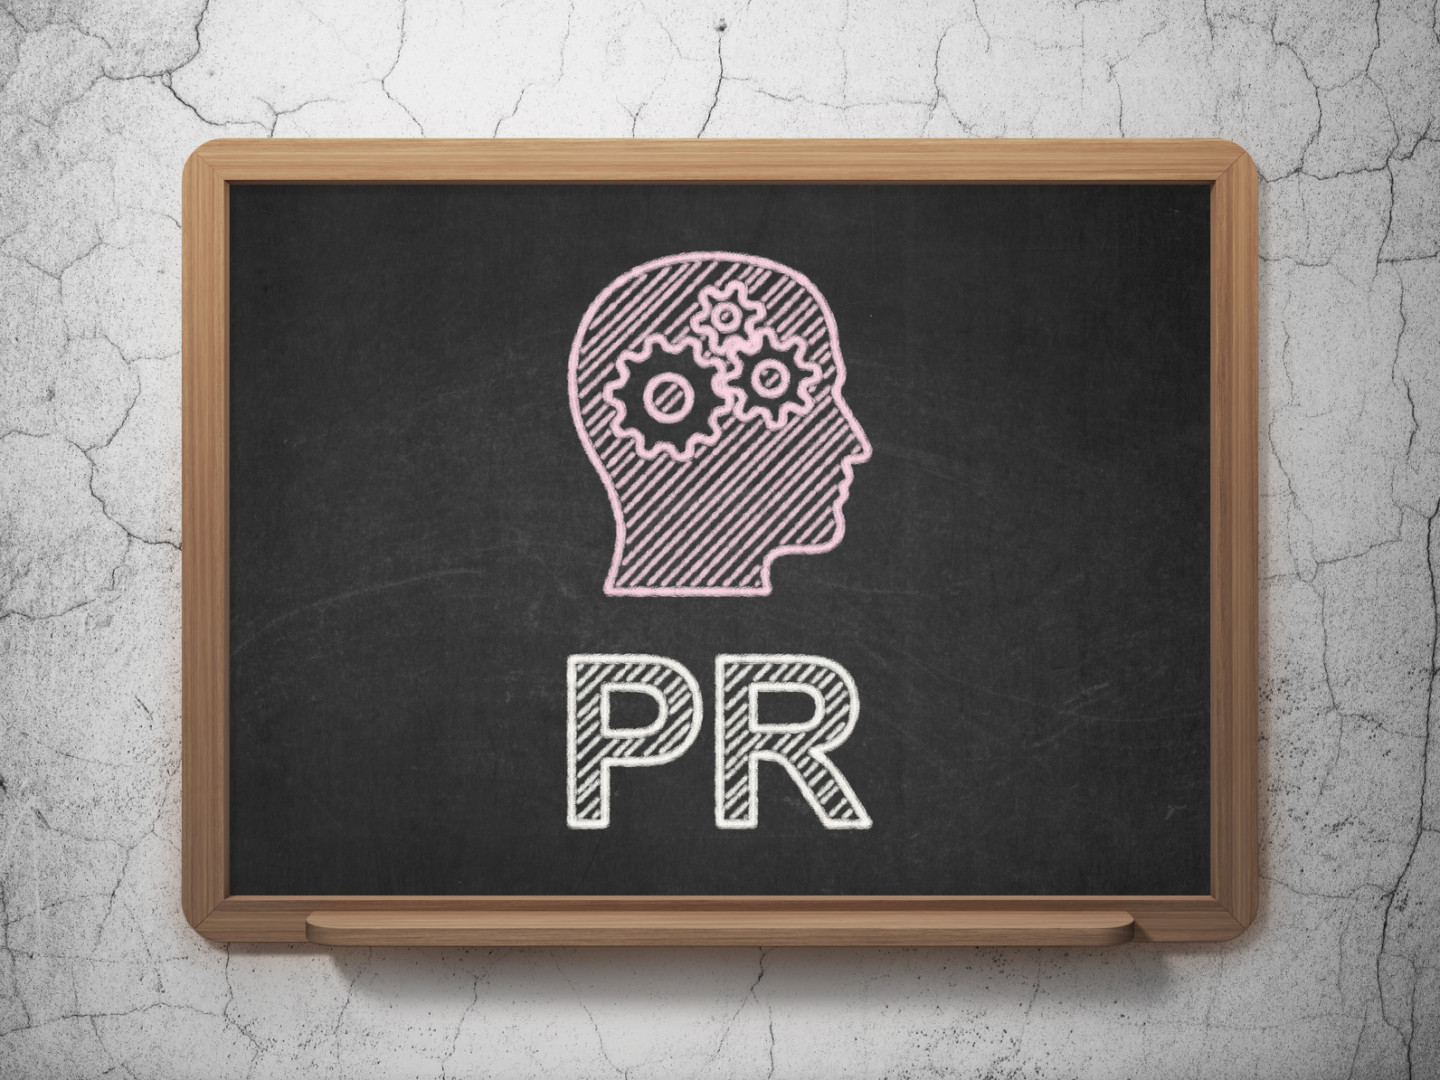 Brandberries PR Agency - nowa agencja na rynku PR Public Relations mediarunbrandberriespr